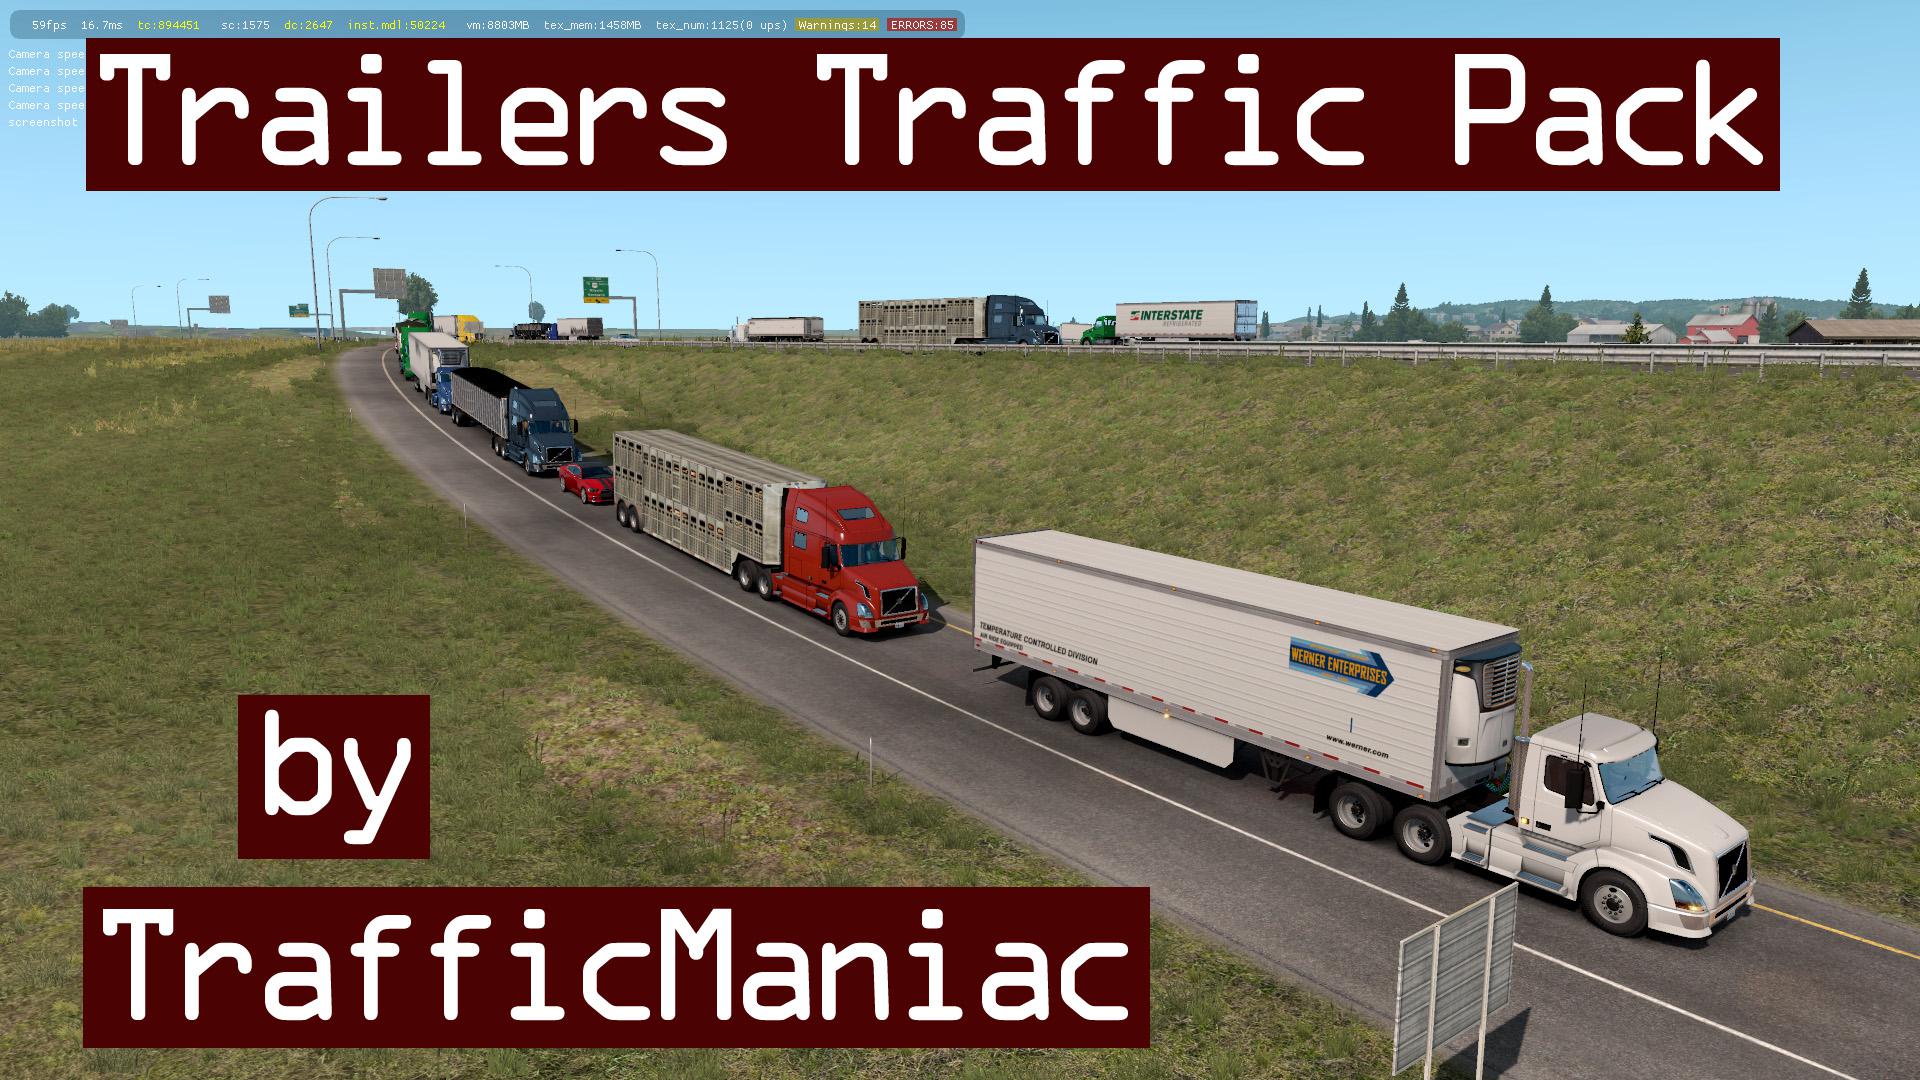 Trailers Traffic Pack by TrafficManiac v 1.0